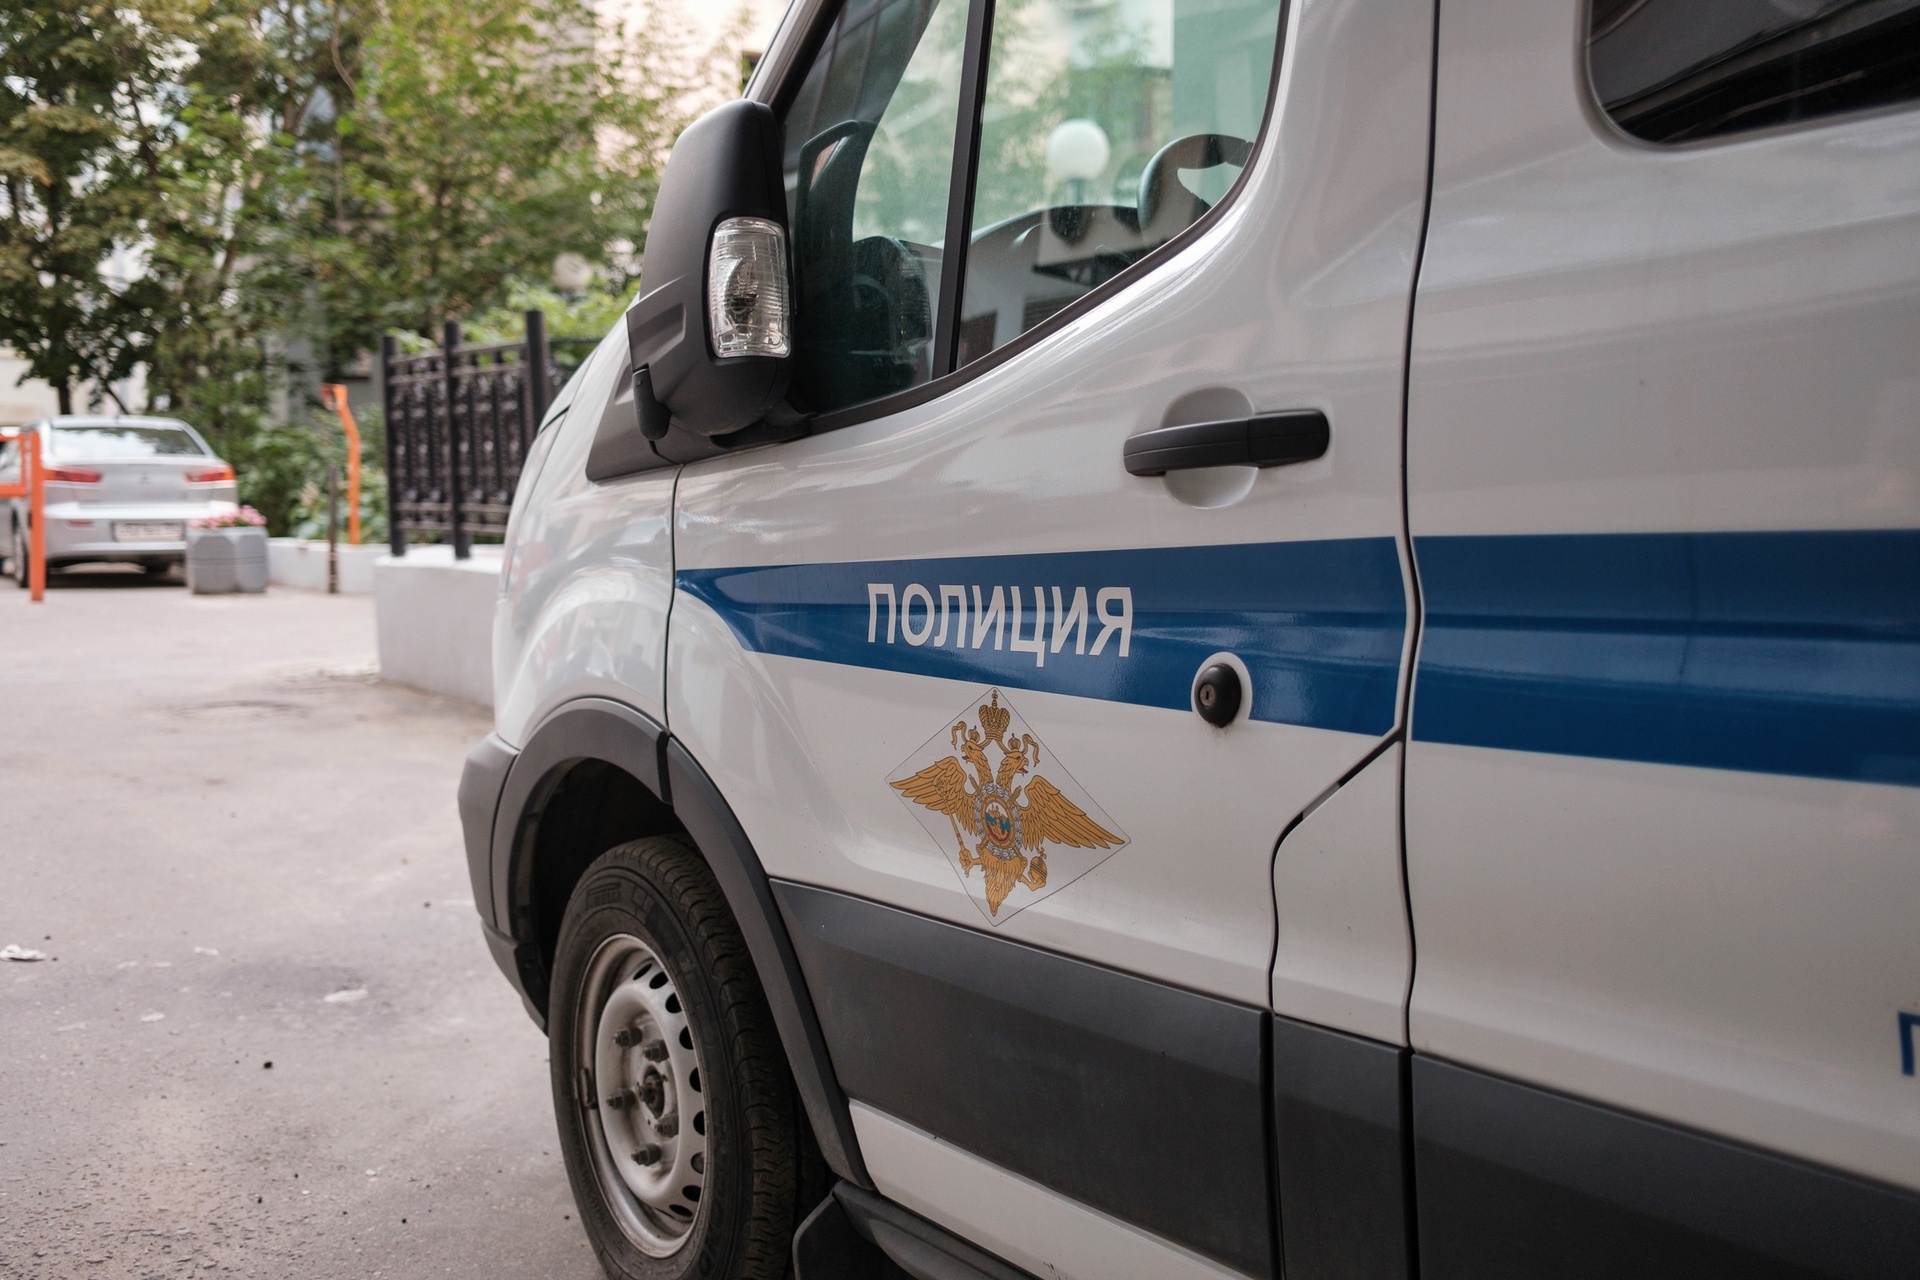 SHOT: жительница Солнечногорска сбросила в колодец труп и подожгла его